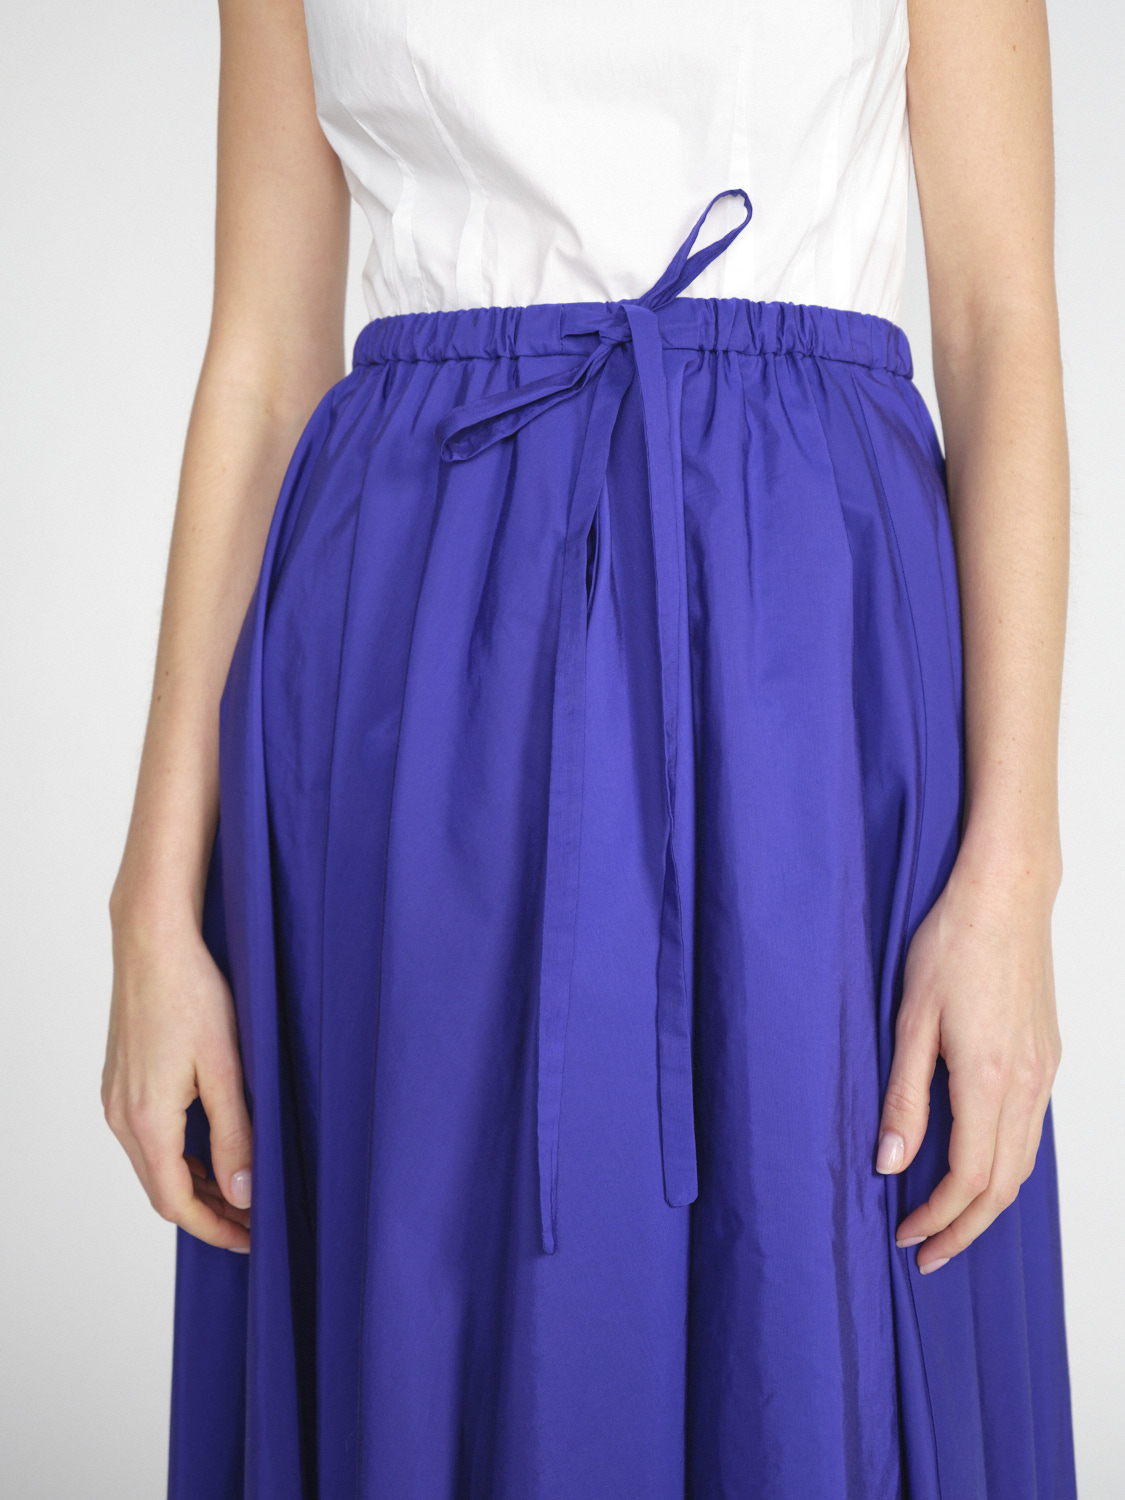 Odeeh Admiral - Taffeta skirt in midi length  purple 34